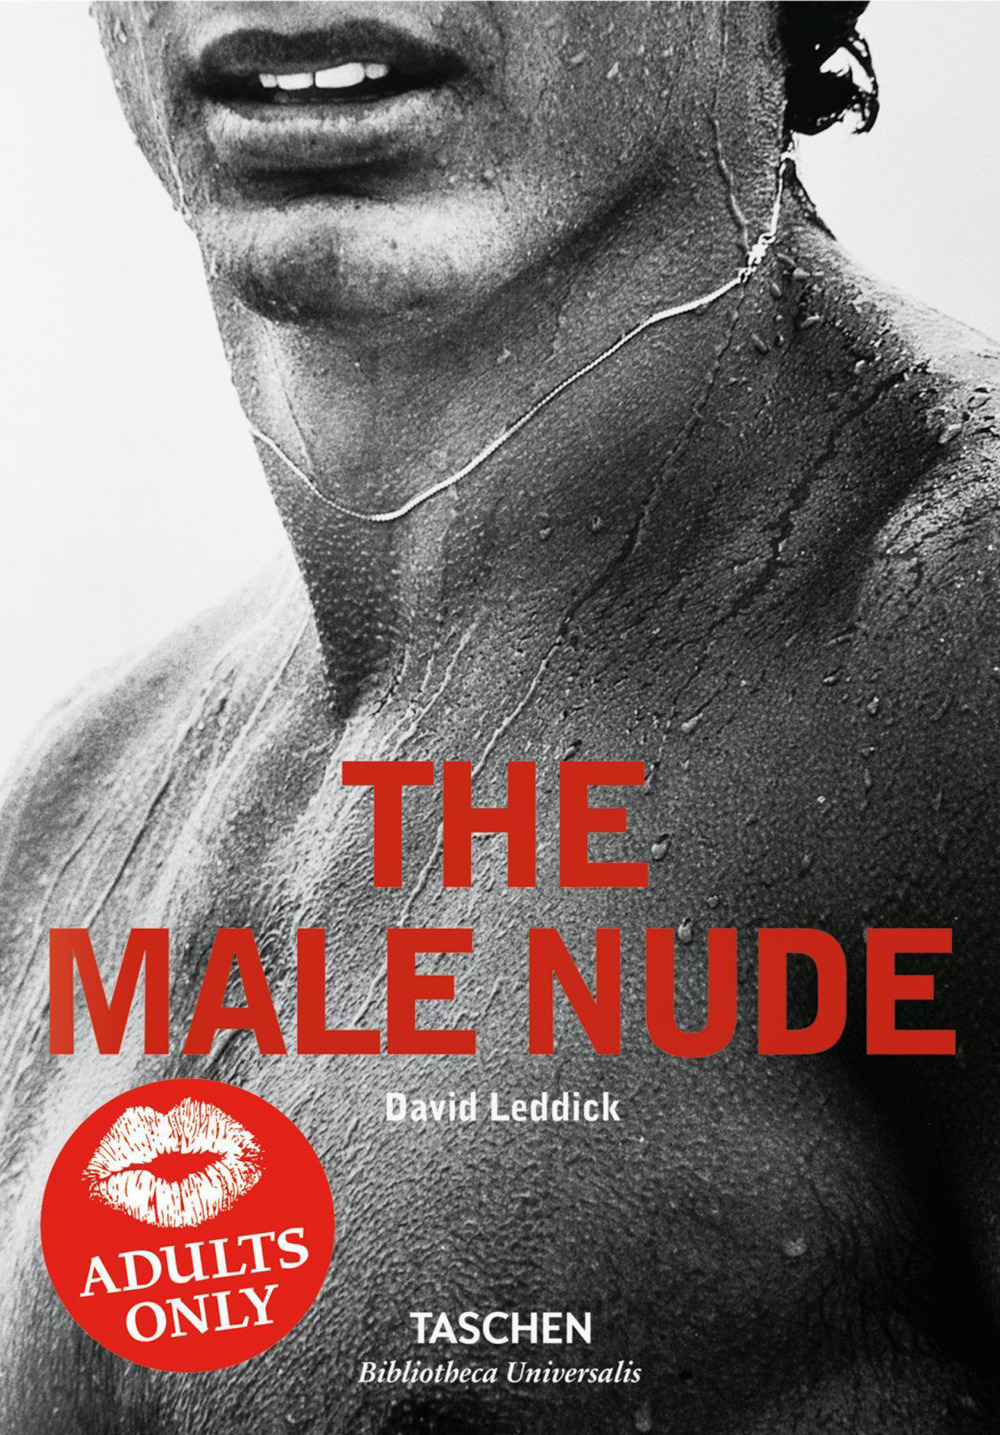 The male nude. Ediz. italiana, spagnola e portoghese